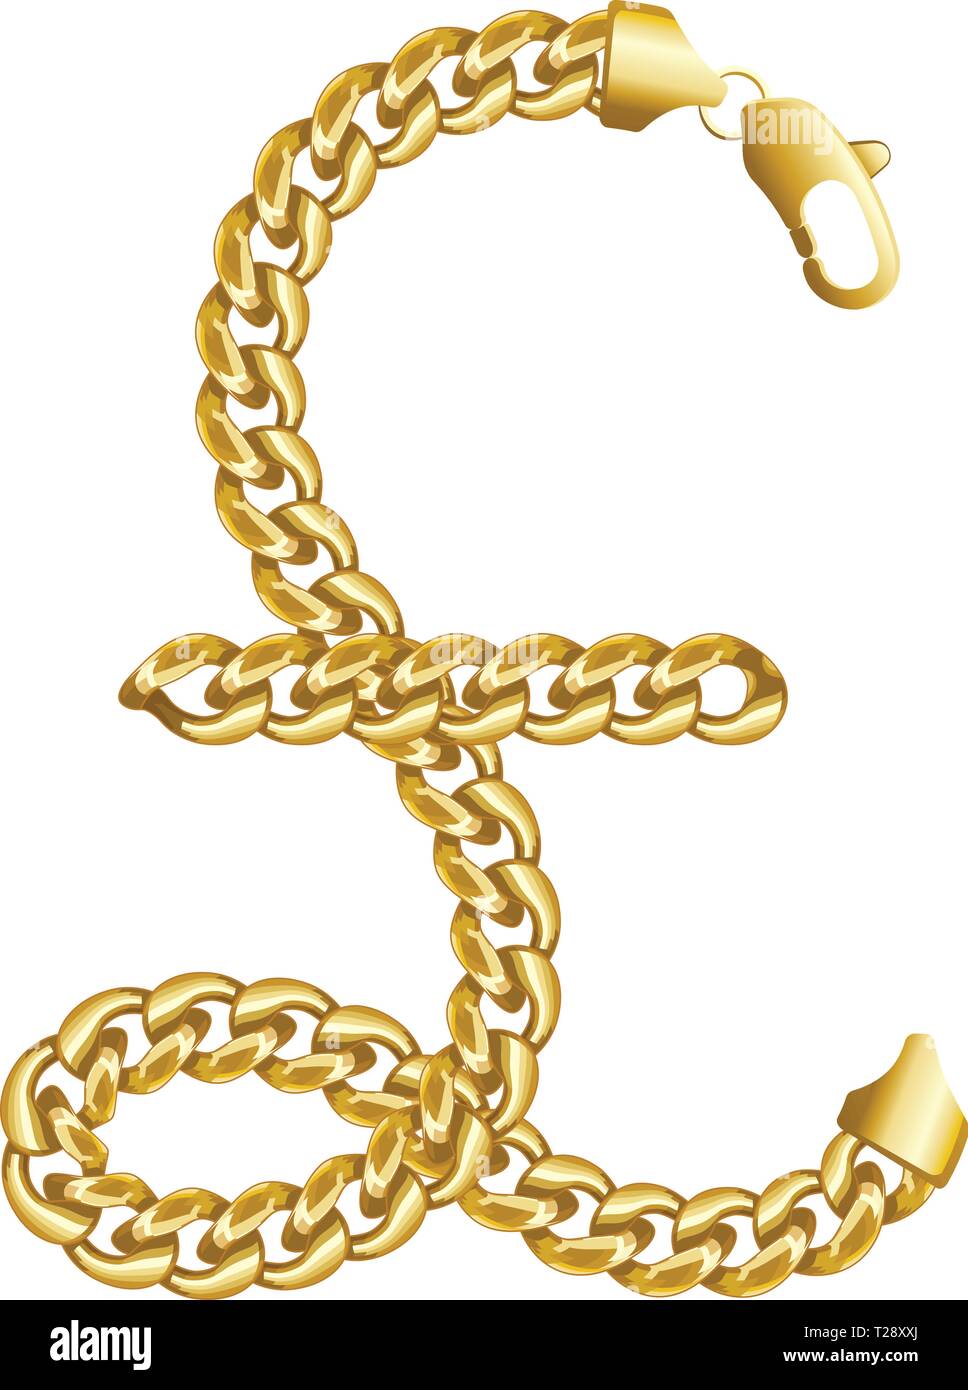 Oro sterlina denaro fatti segno di lucido spessa catena dorata. Illustrazione Vettoriale